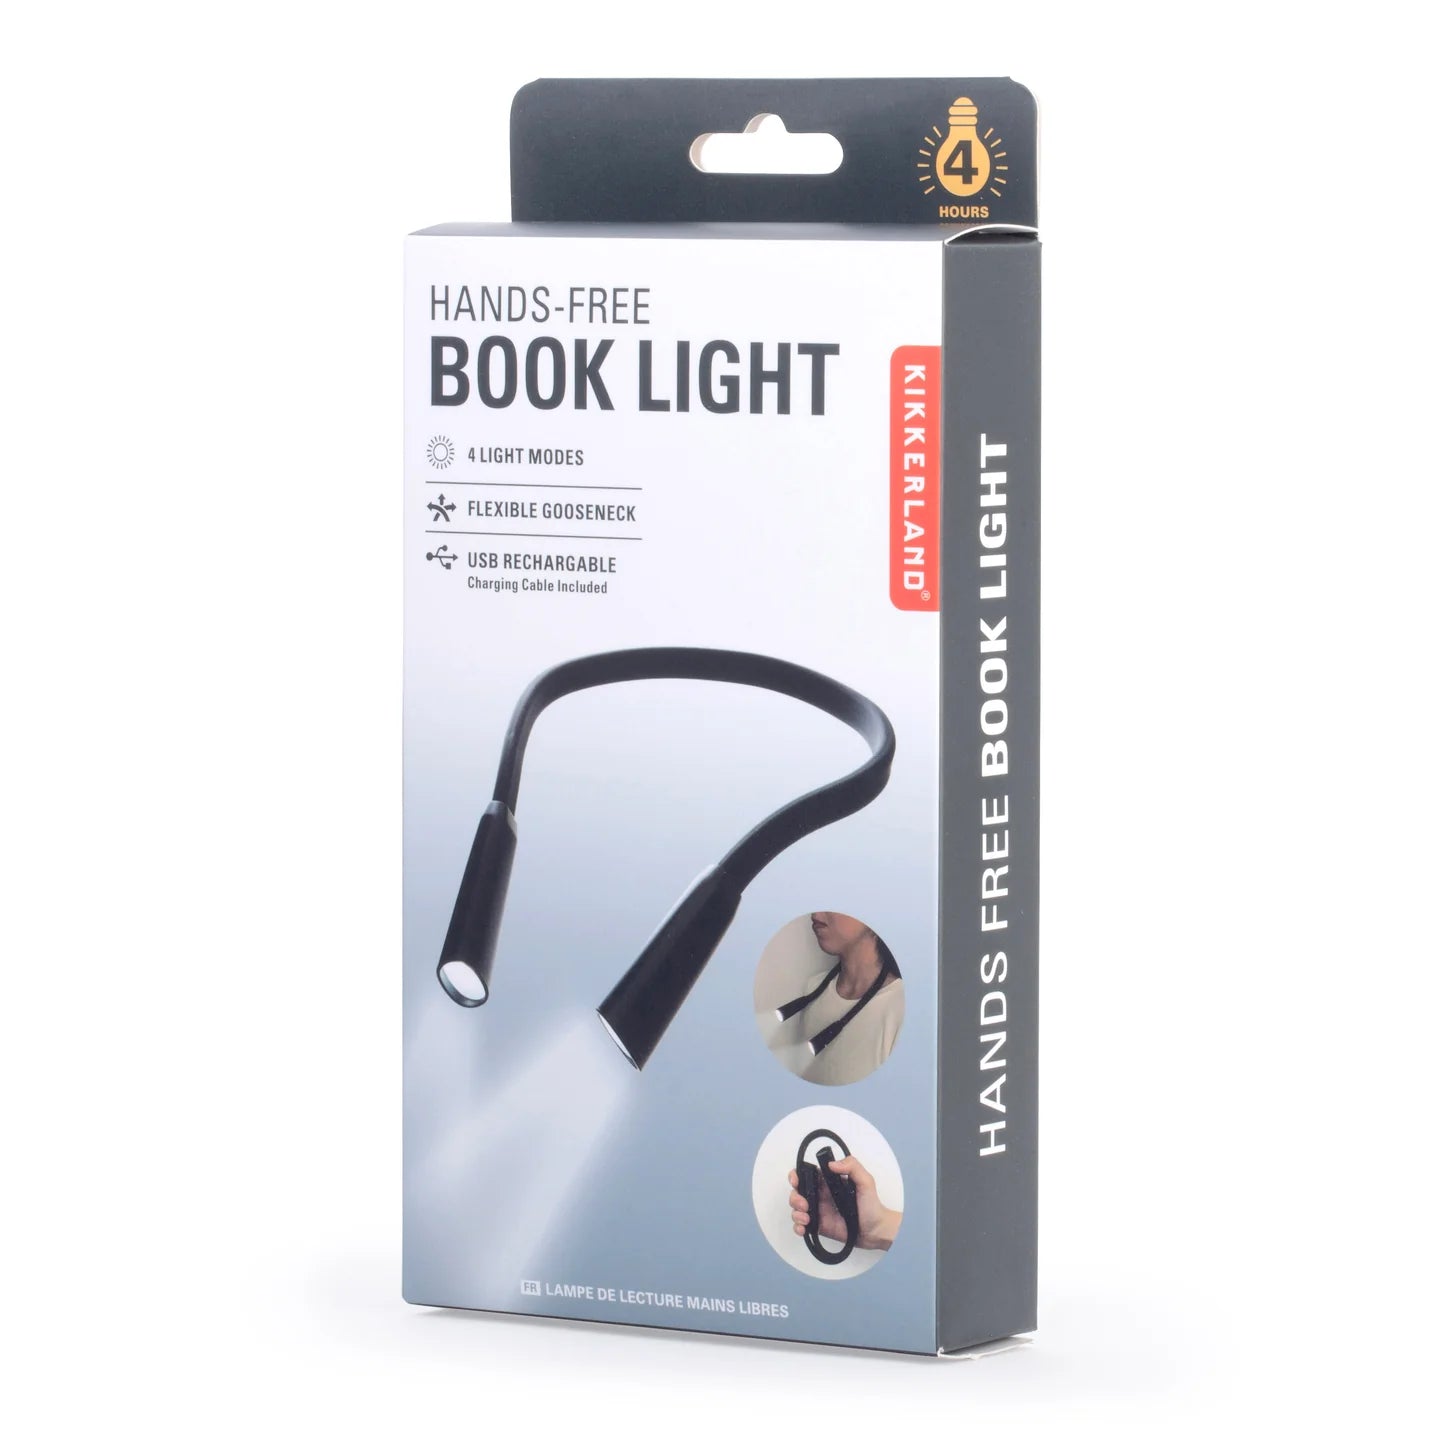 Fab Gifts | Kikkerland Neck Book Light by Weirs of Baggot Street